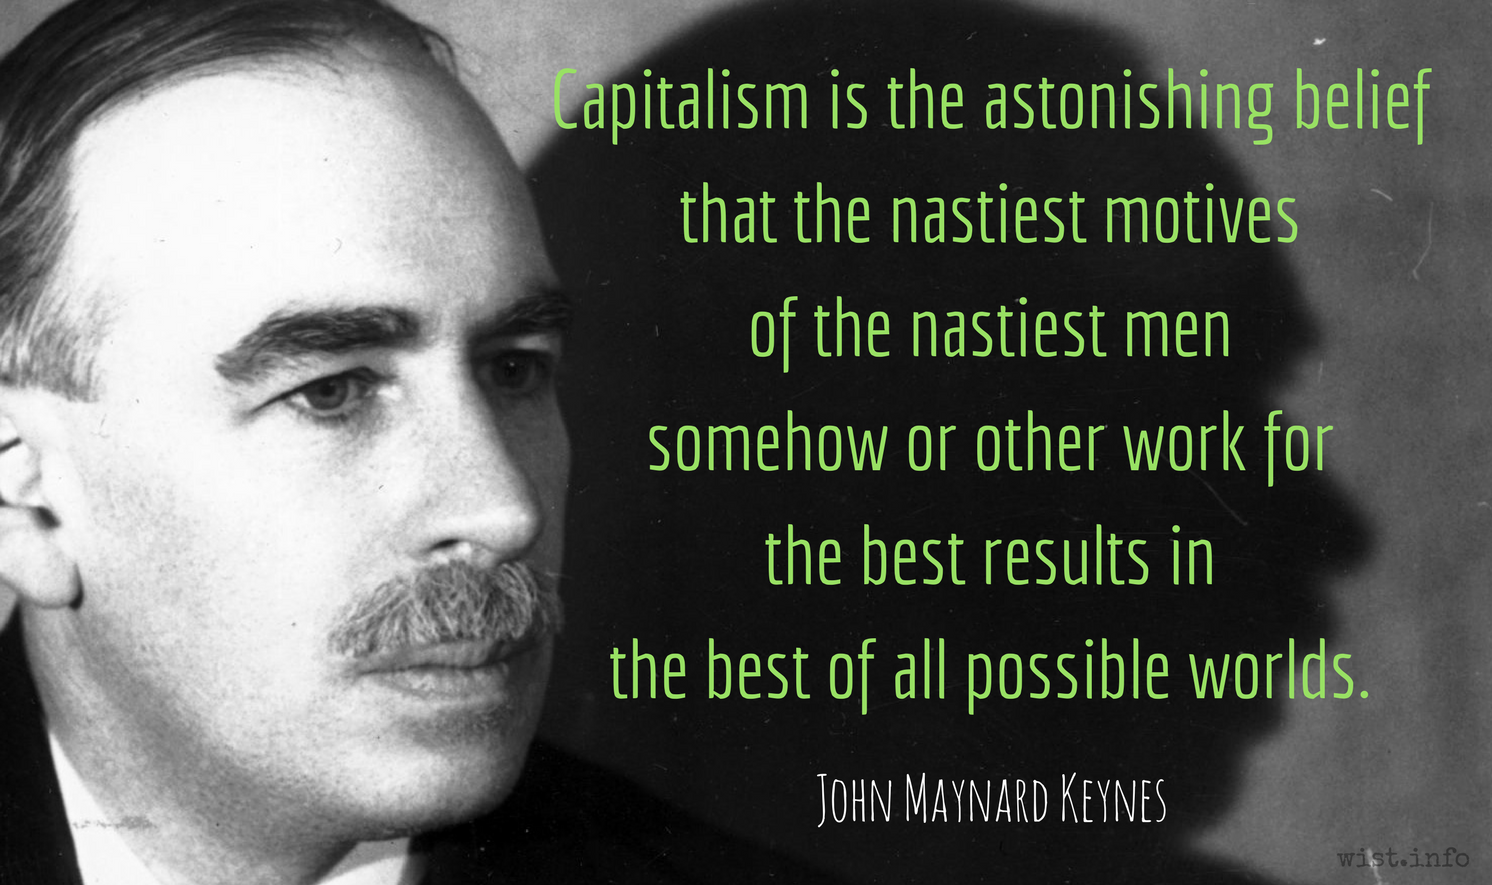 Keynes-capitalism-astonishing-belief-nastiest-best-results-wist_info-quote.png